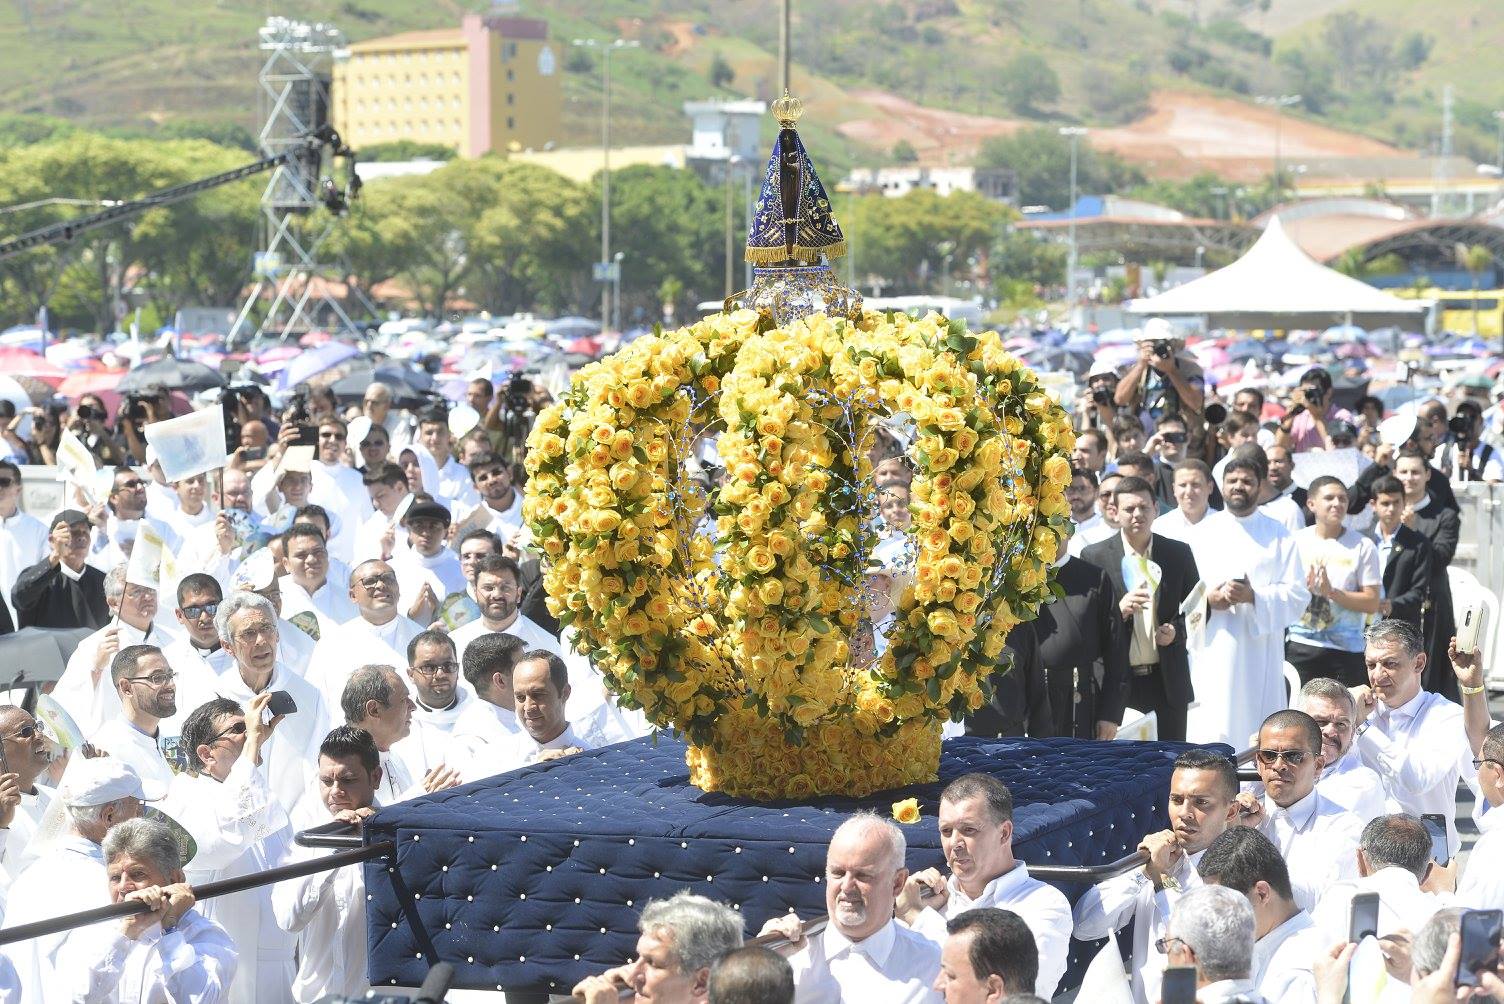 Missa Solene dos 300 anos da Padroeira do Brasil. Foto: Thiago Leon/Fotos Públicas